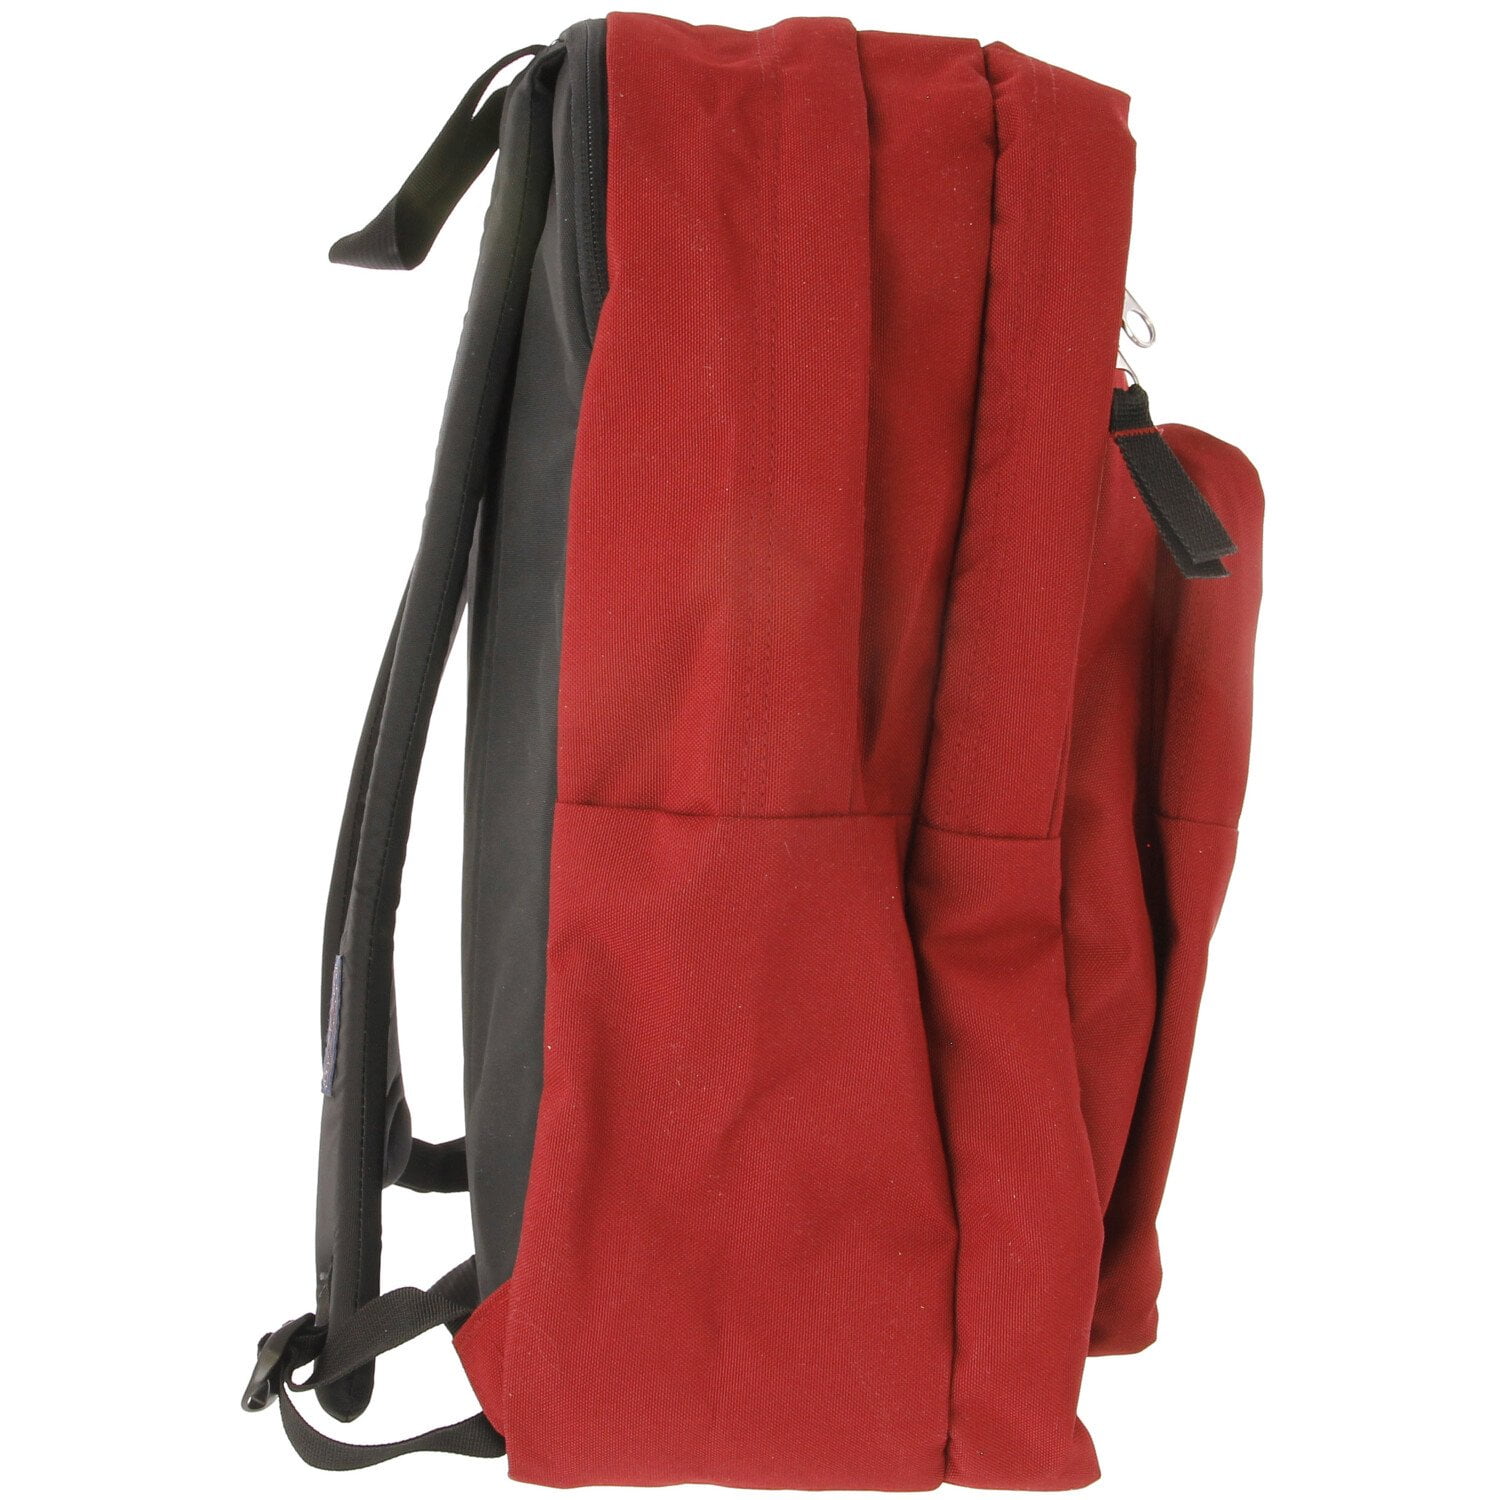 JanSport Laptop Backpack, Black - Computer Bag with 2 Compartments,  Ergonomic Shoulder Straps, 15” Laptop Sleeve, Haul Handle - Book Rucksack